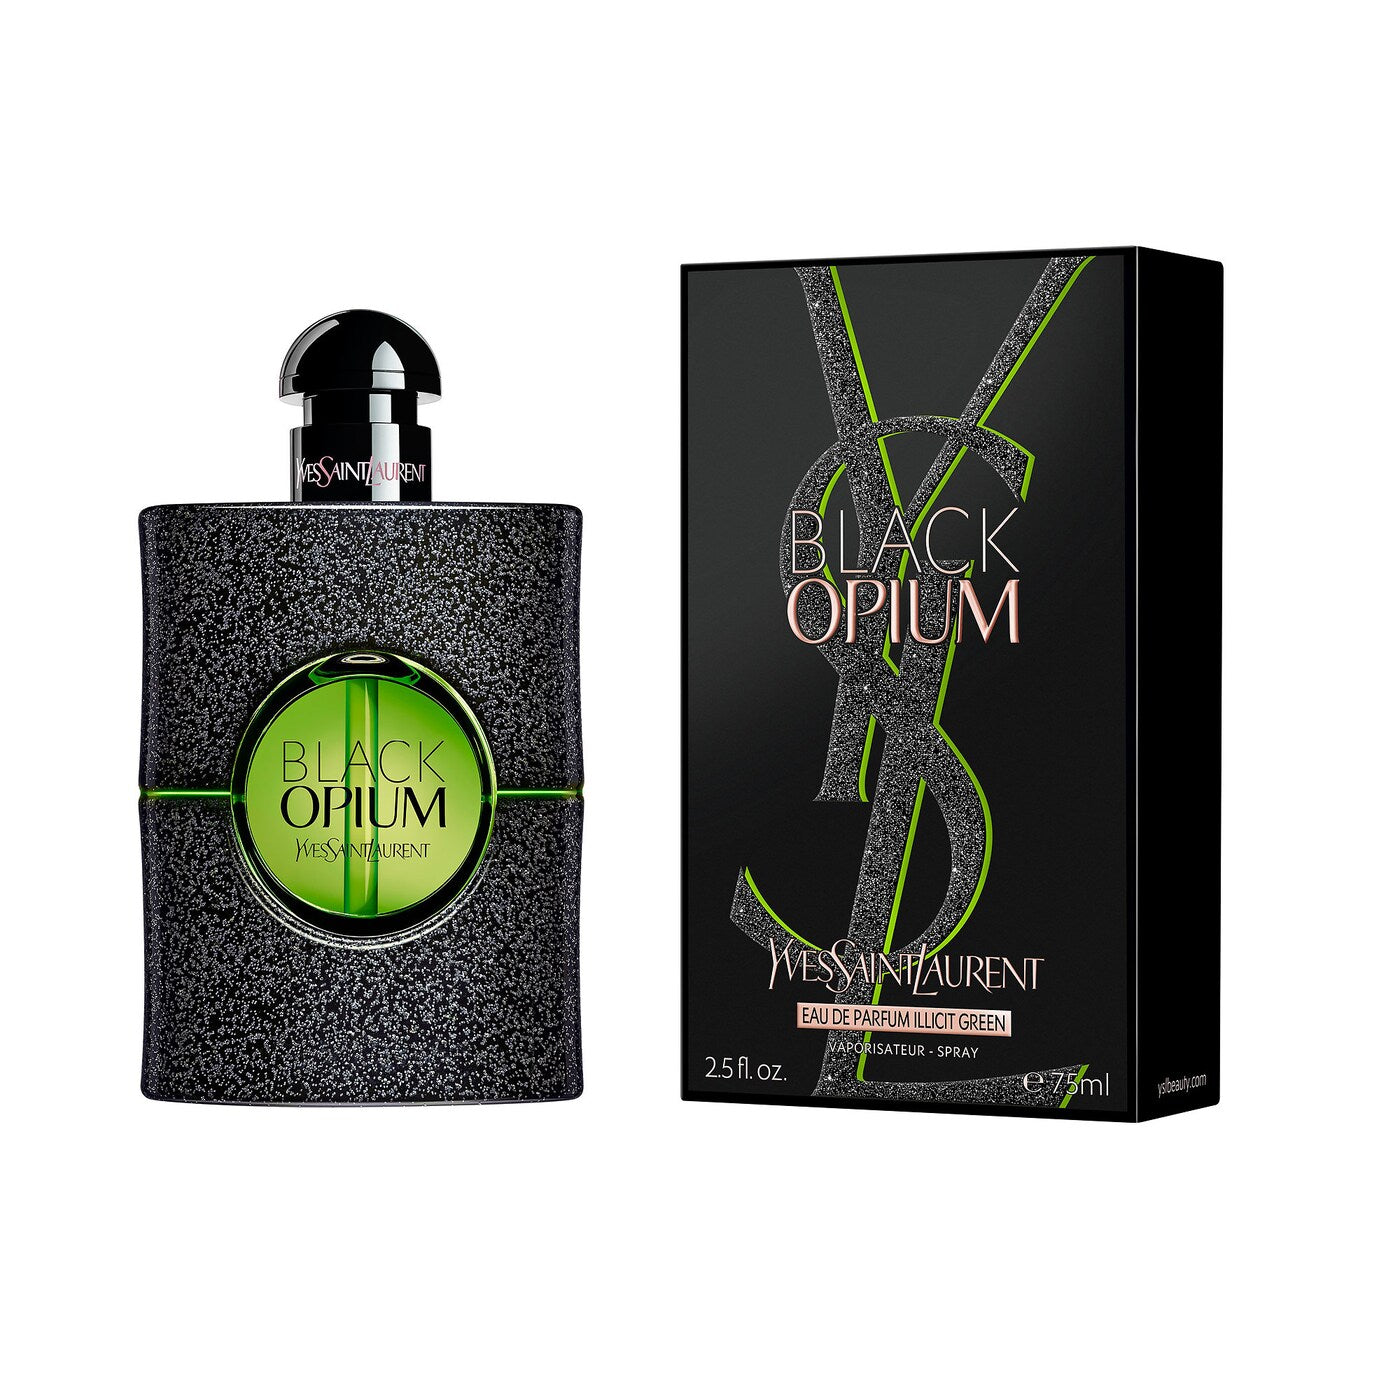 Yves Saint Laurent Black Opium Illicit Green Eau de Parfum 2.5 oz